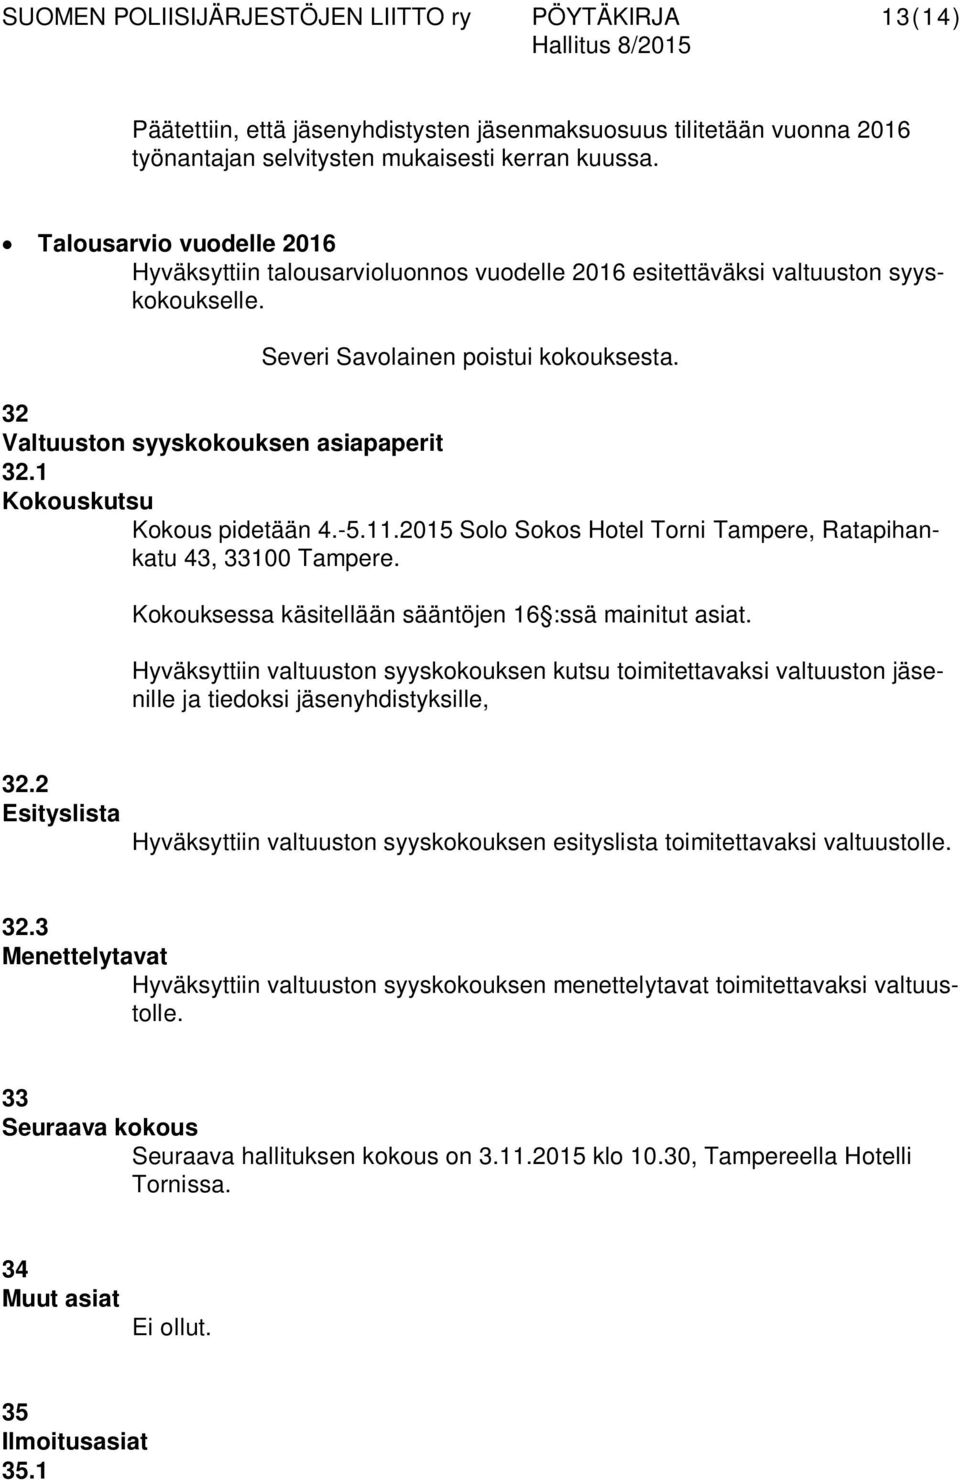 1 Kokouskutsu Kokous pidetään 4.-5.11.2015 Solo Sokos Hotel Torni Tampere, Ratapihankatu 43, 33100 Tampere. Kokouksessa käsitellään sääntöjen 16 :ssä mainitut asiat.